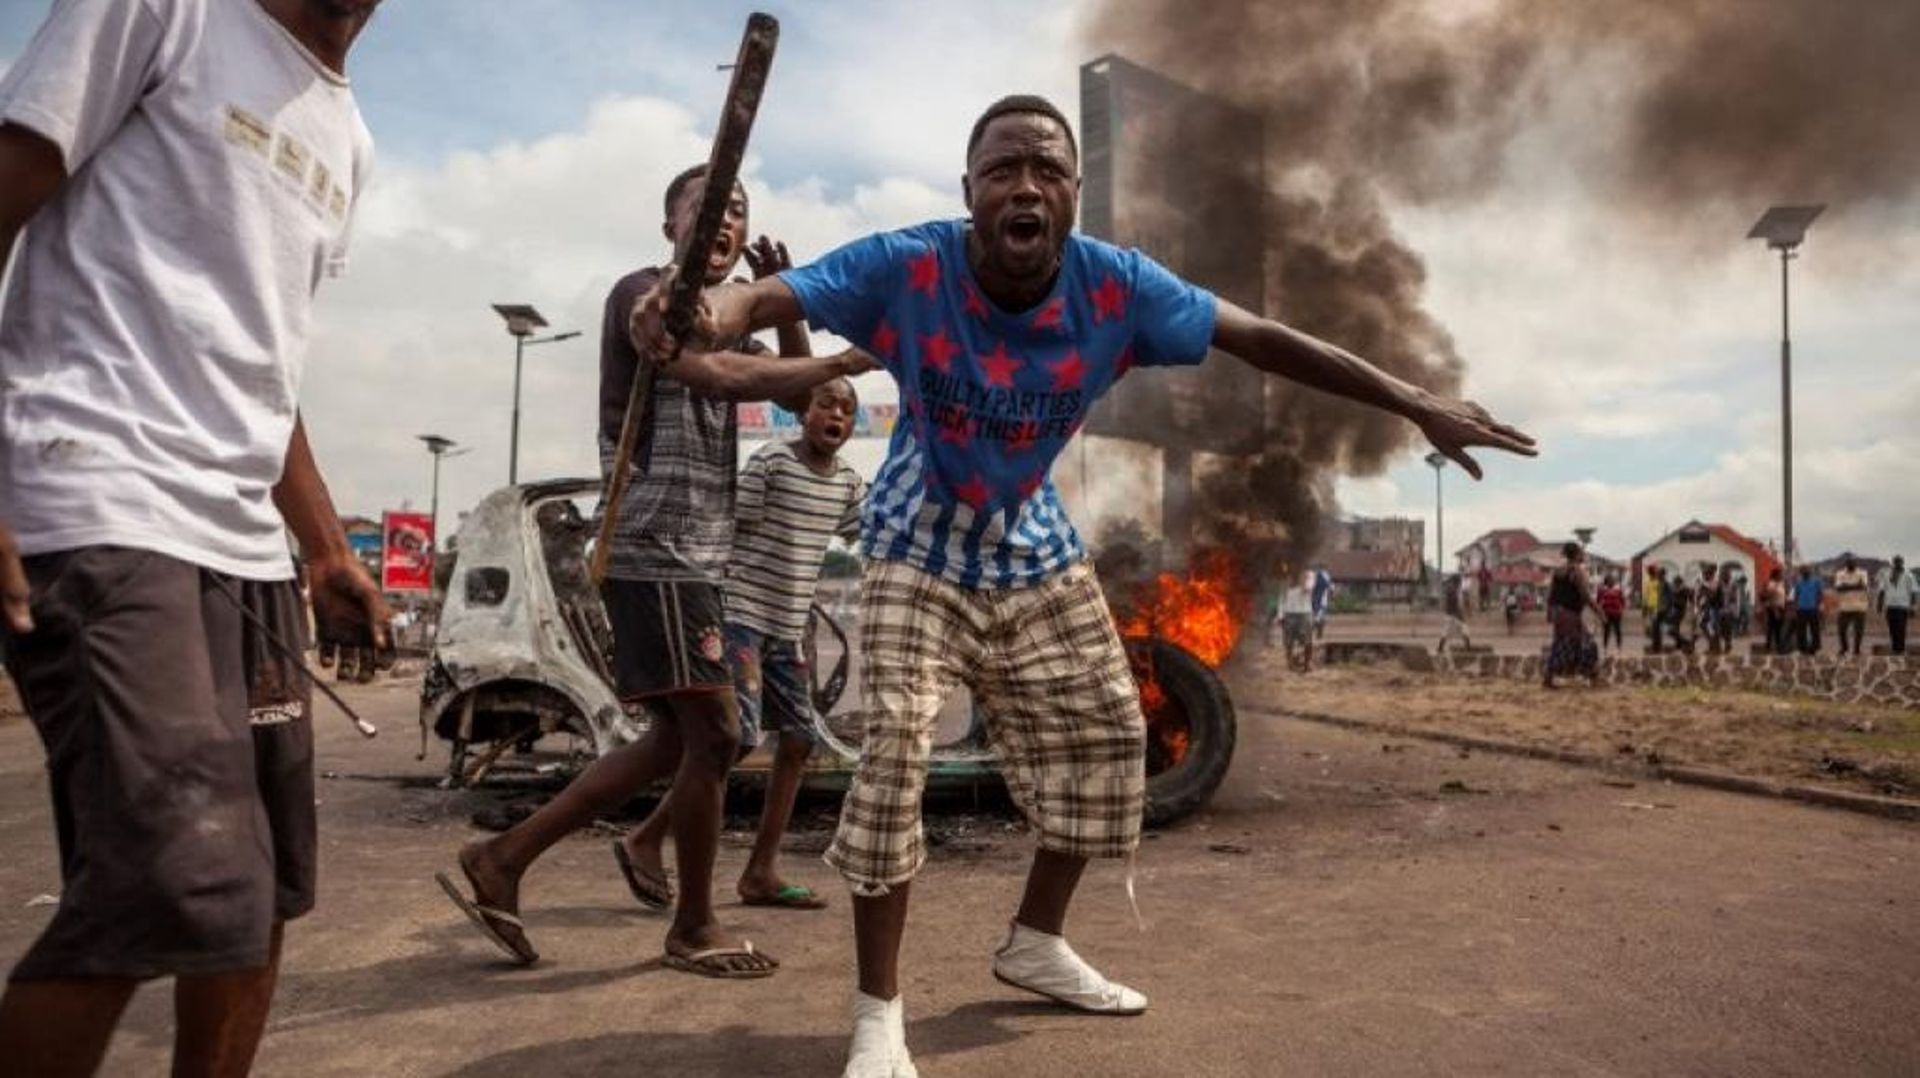 Manifestations violentes en RDC